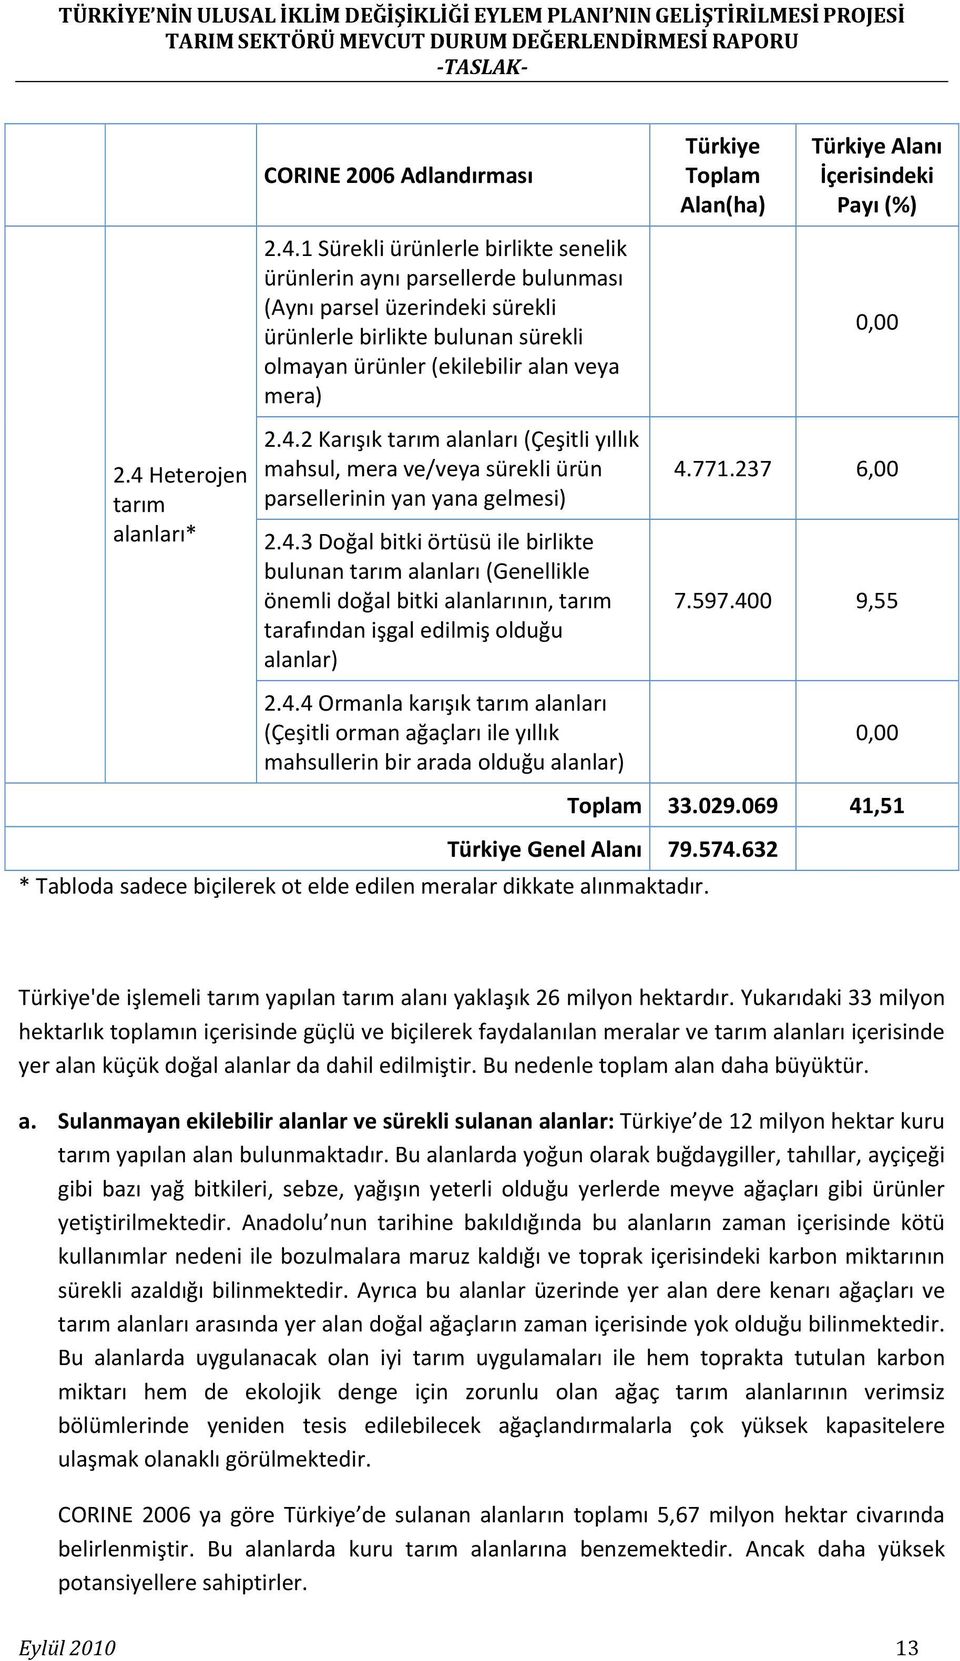 4.4 Ormanla karışık tarım alanları (Çeşitli orman ağaçları ile yıllık mahsullerin bir arada olduğu alanlar) Türkiye Toplam Alan(ha) Türkiye Alanı İçerisindeki Payı (%) 0,00 4.771.237 6,00 7.597.